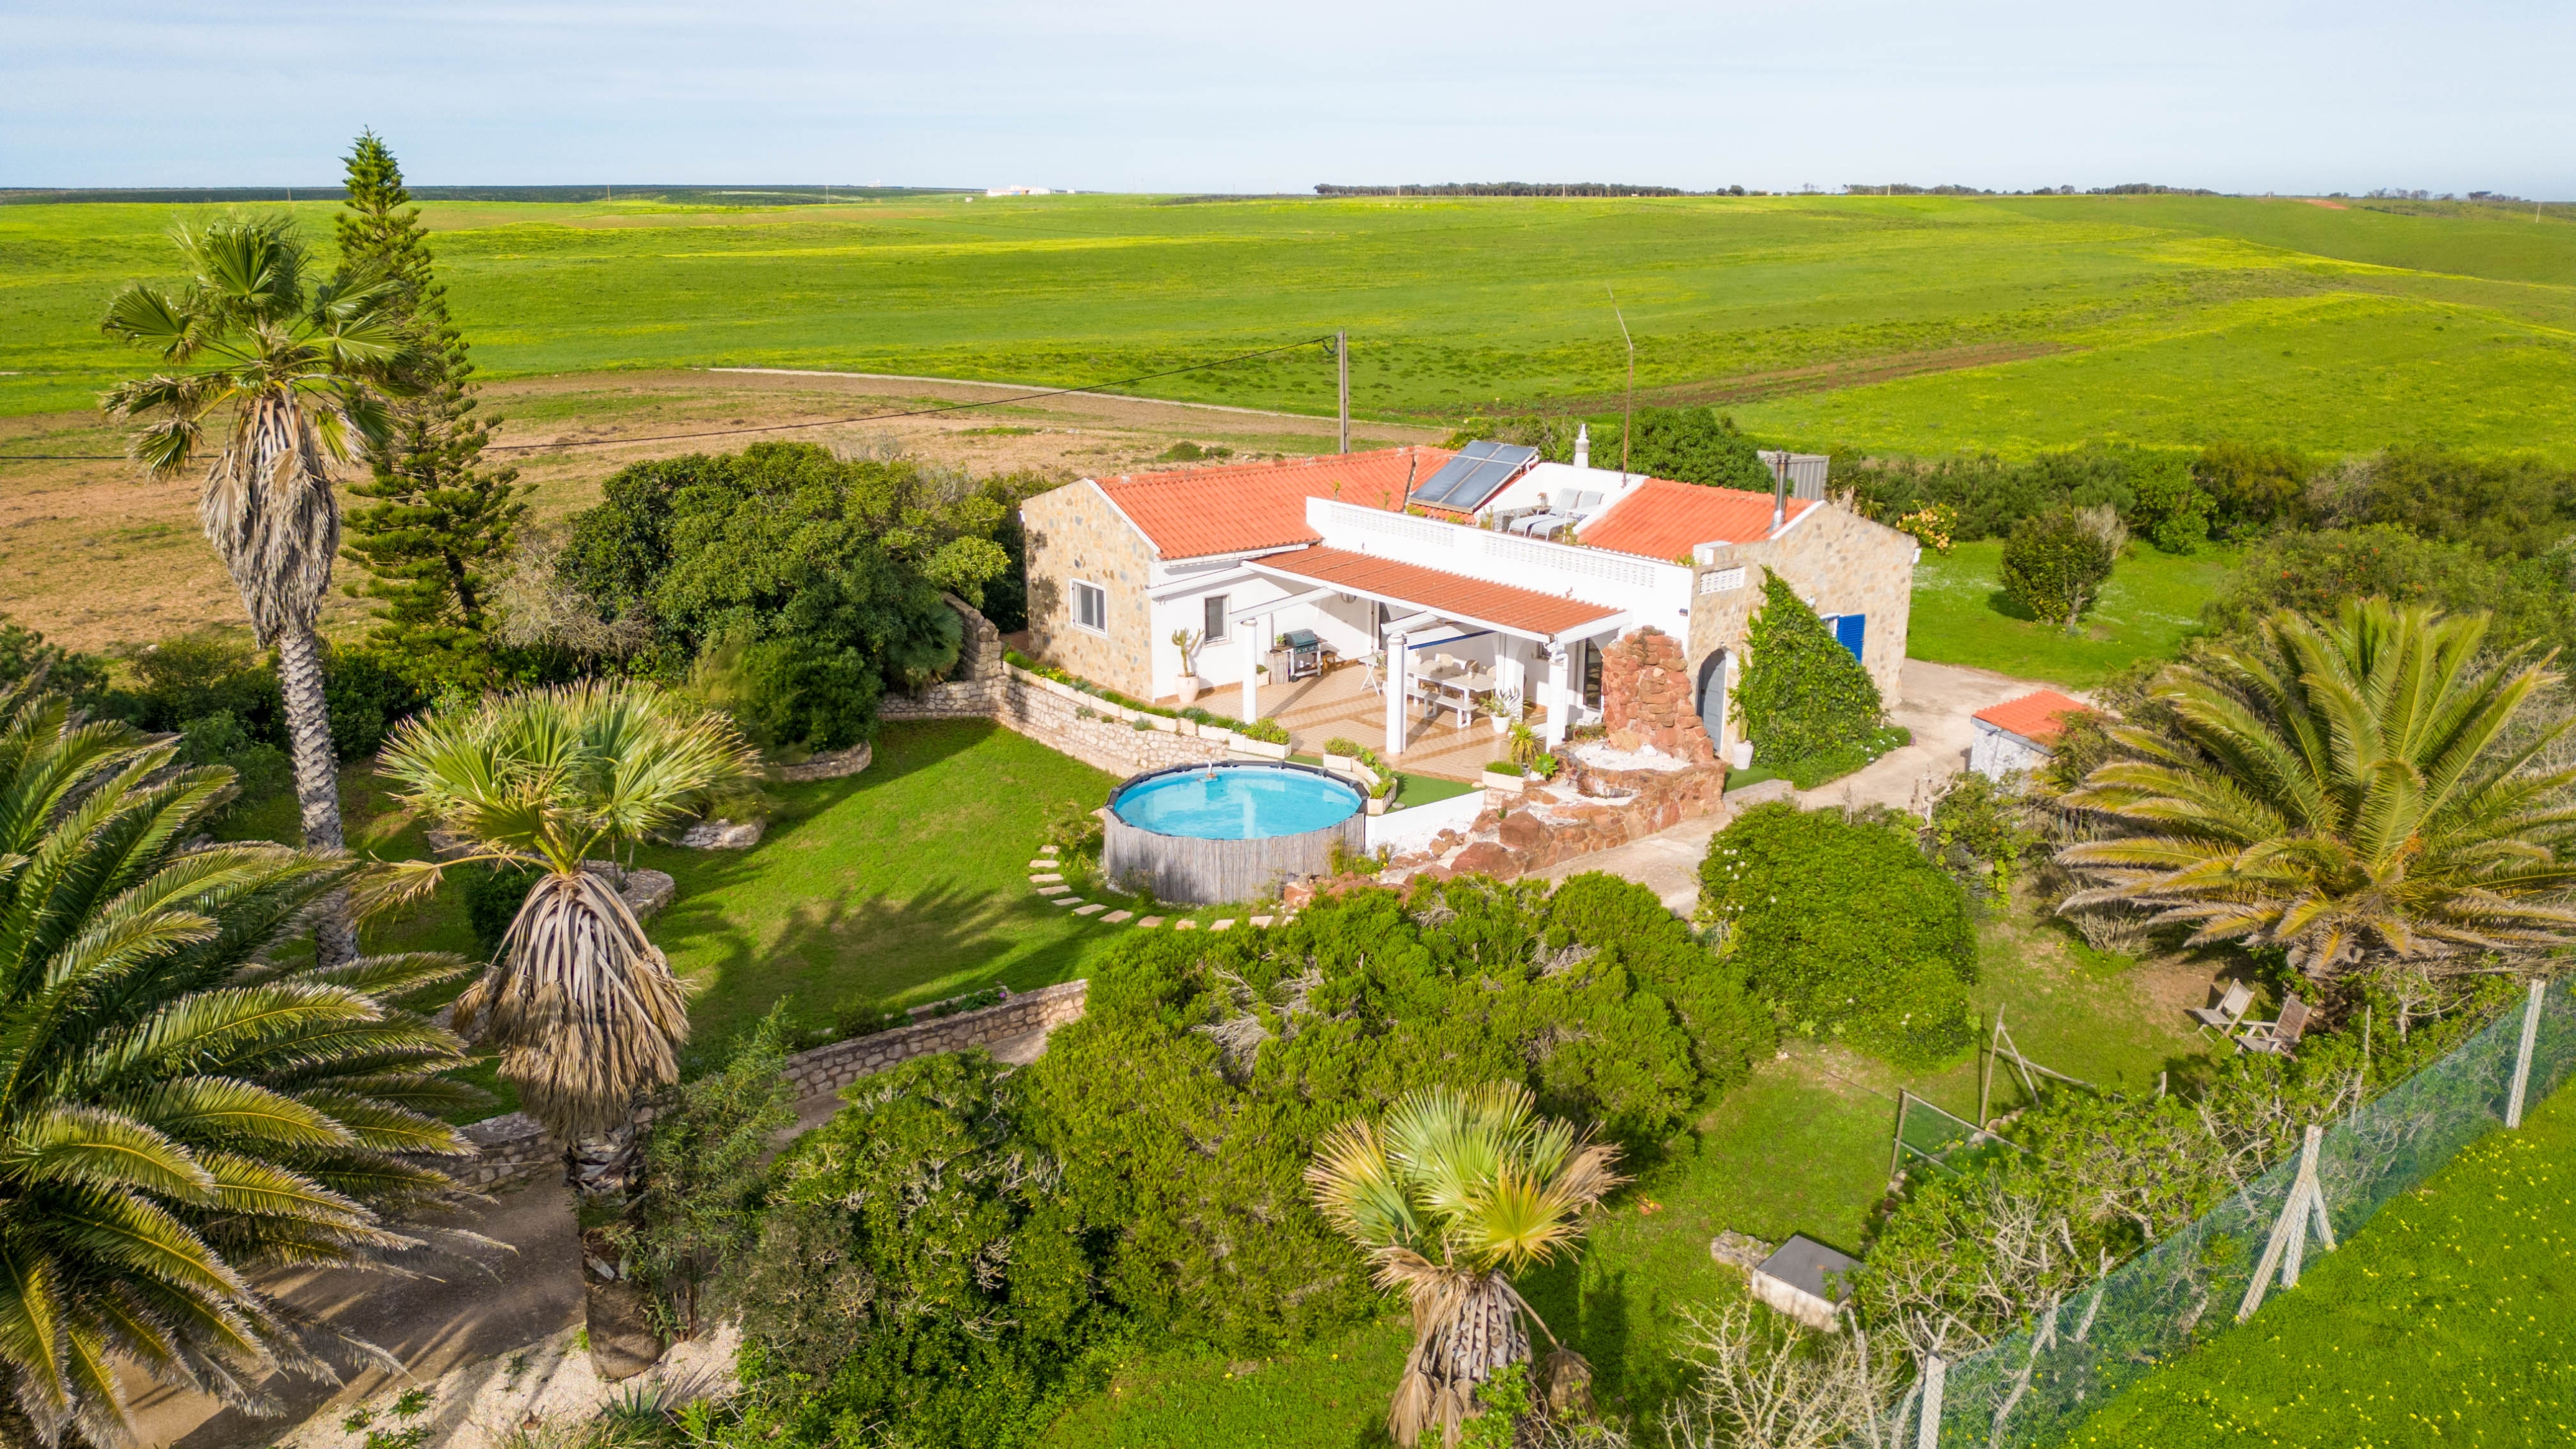 Villa tranquille de 3 chambres avec piscine située dans un parc naturel, Vila do Bispo | LG2179 